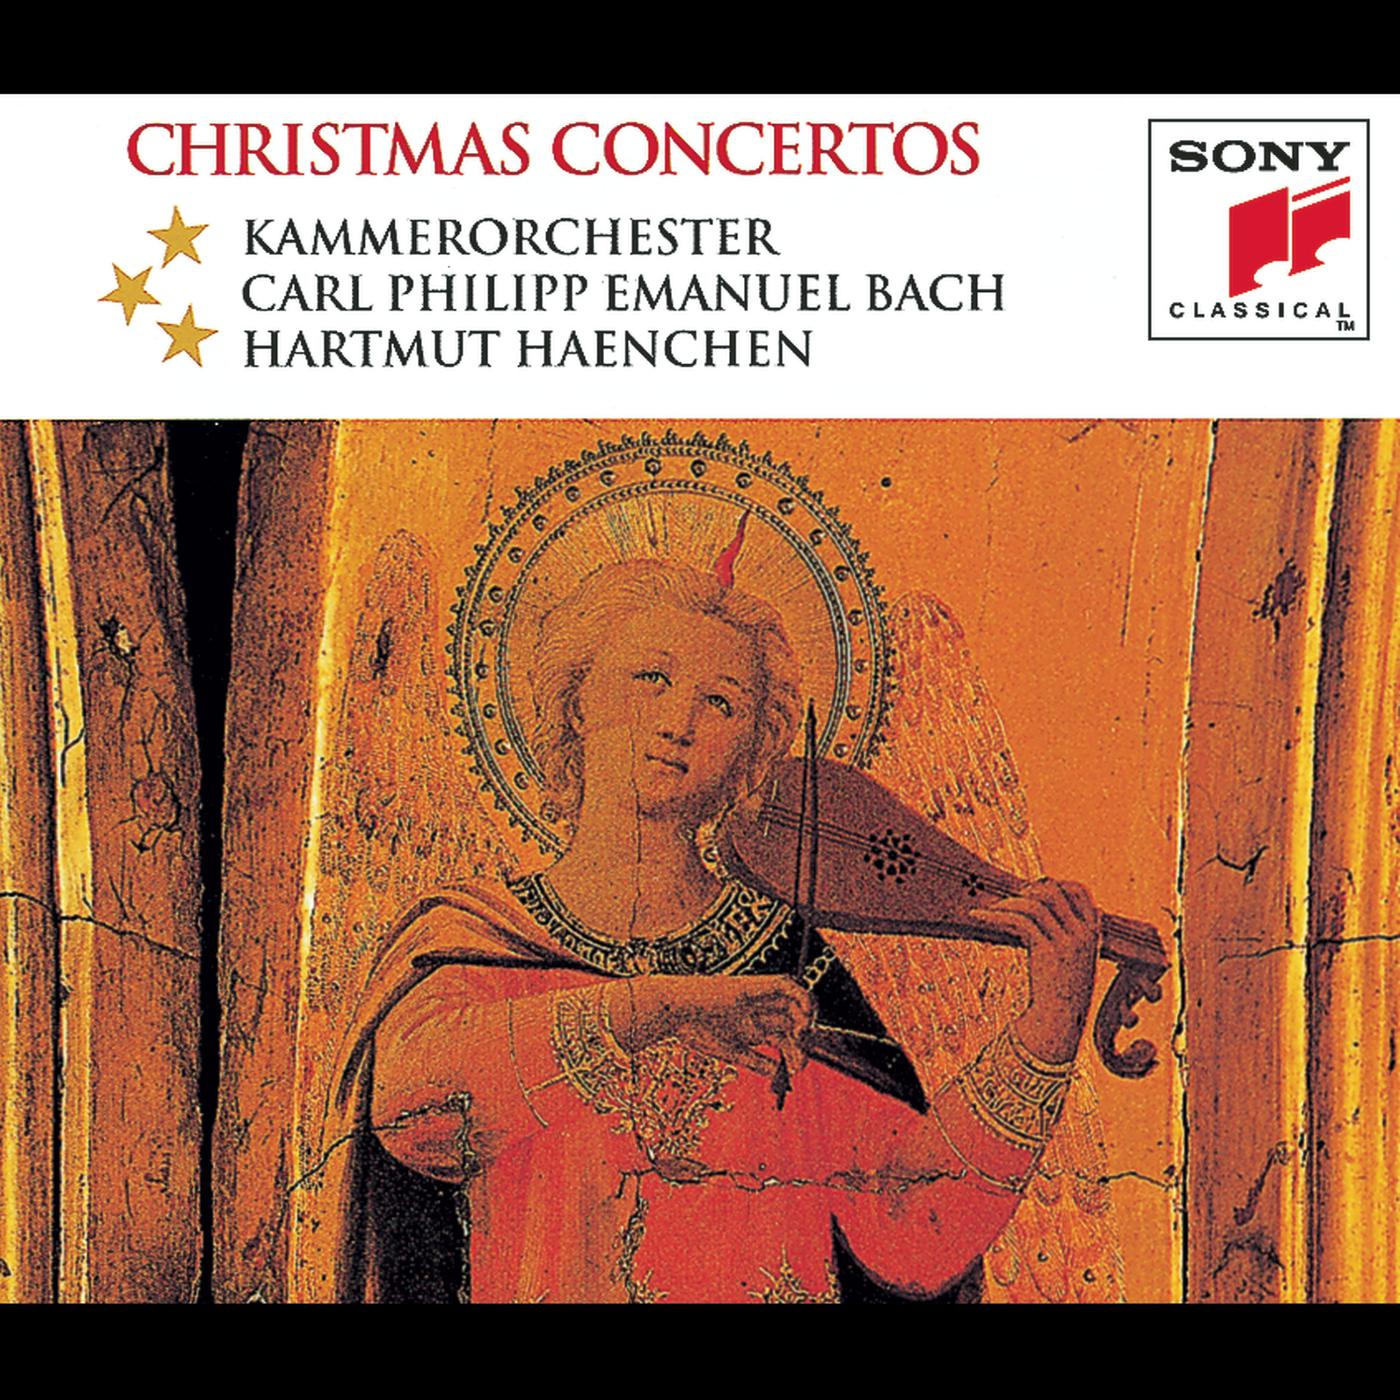 Concerto Grosso in G Minor, Op. 6, No. 8 "Christmas Concerto":I. Vivace - Grave. Arcate, sostenuto e come sta